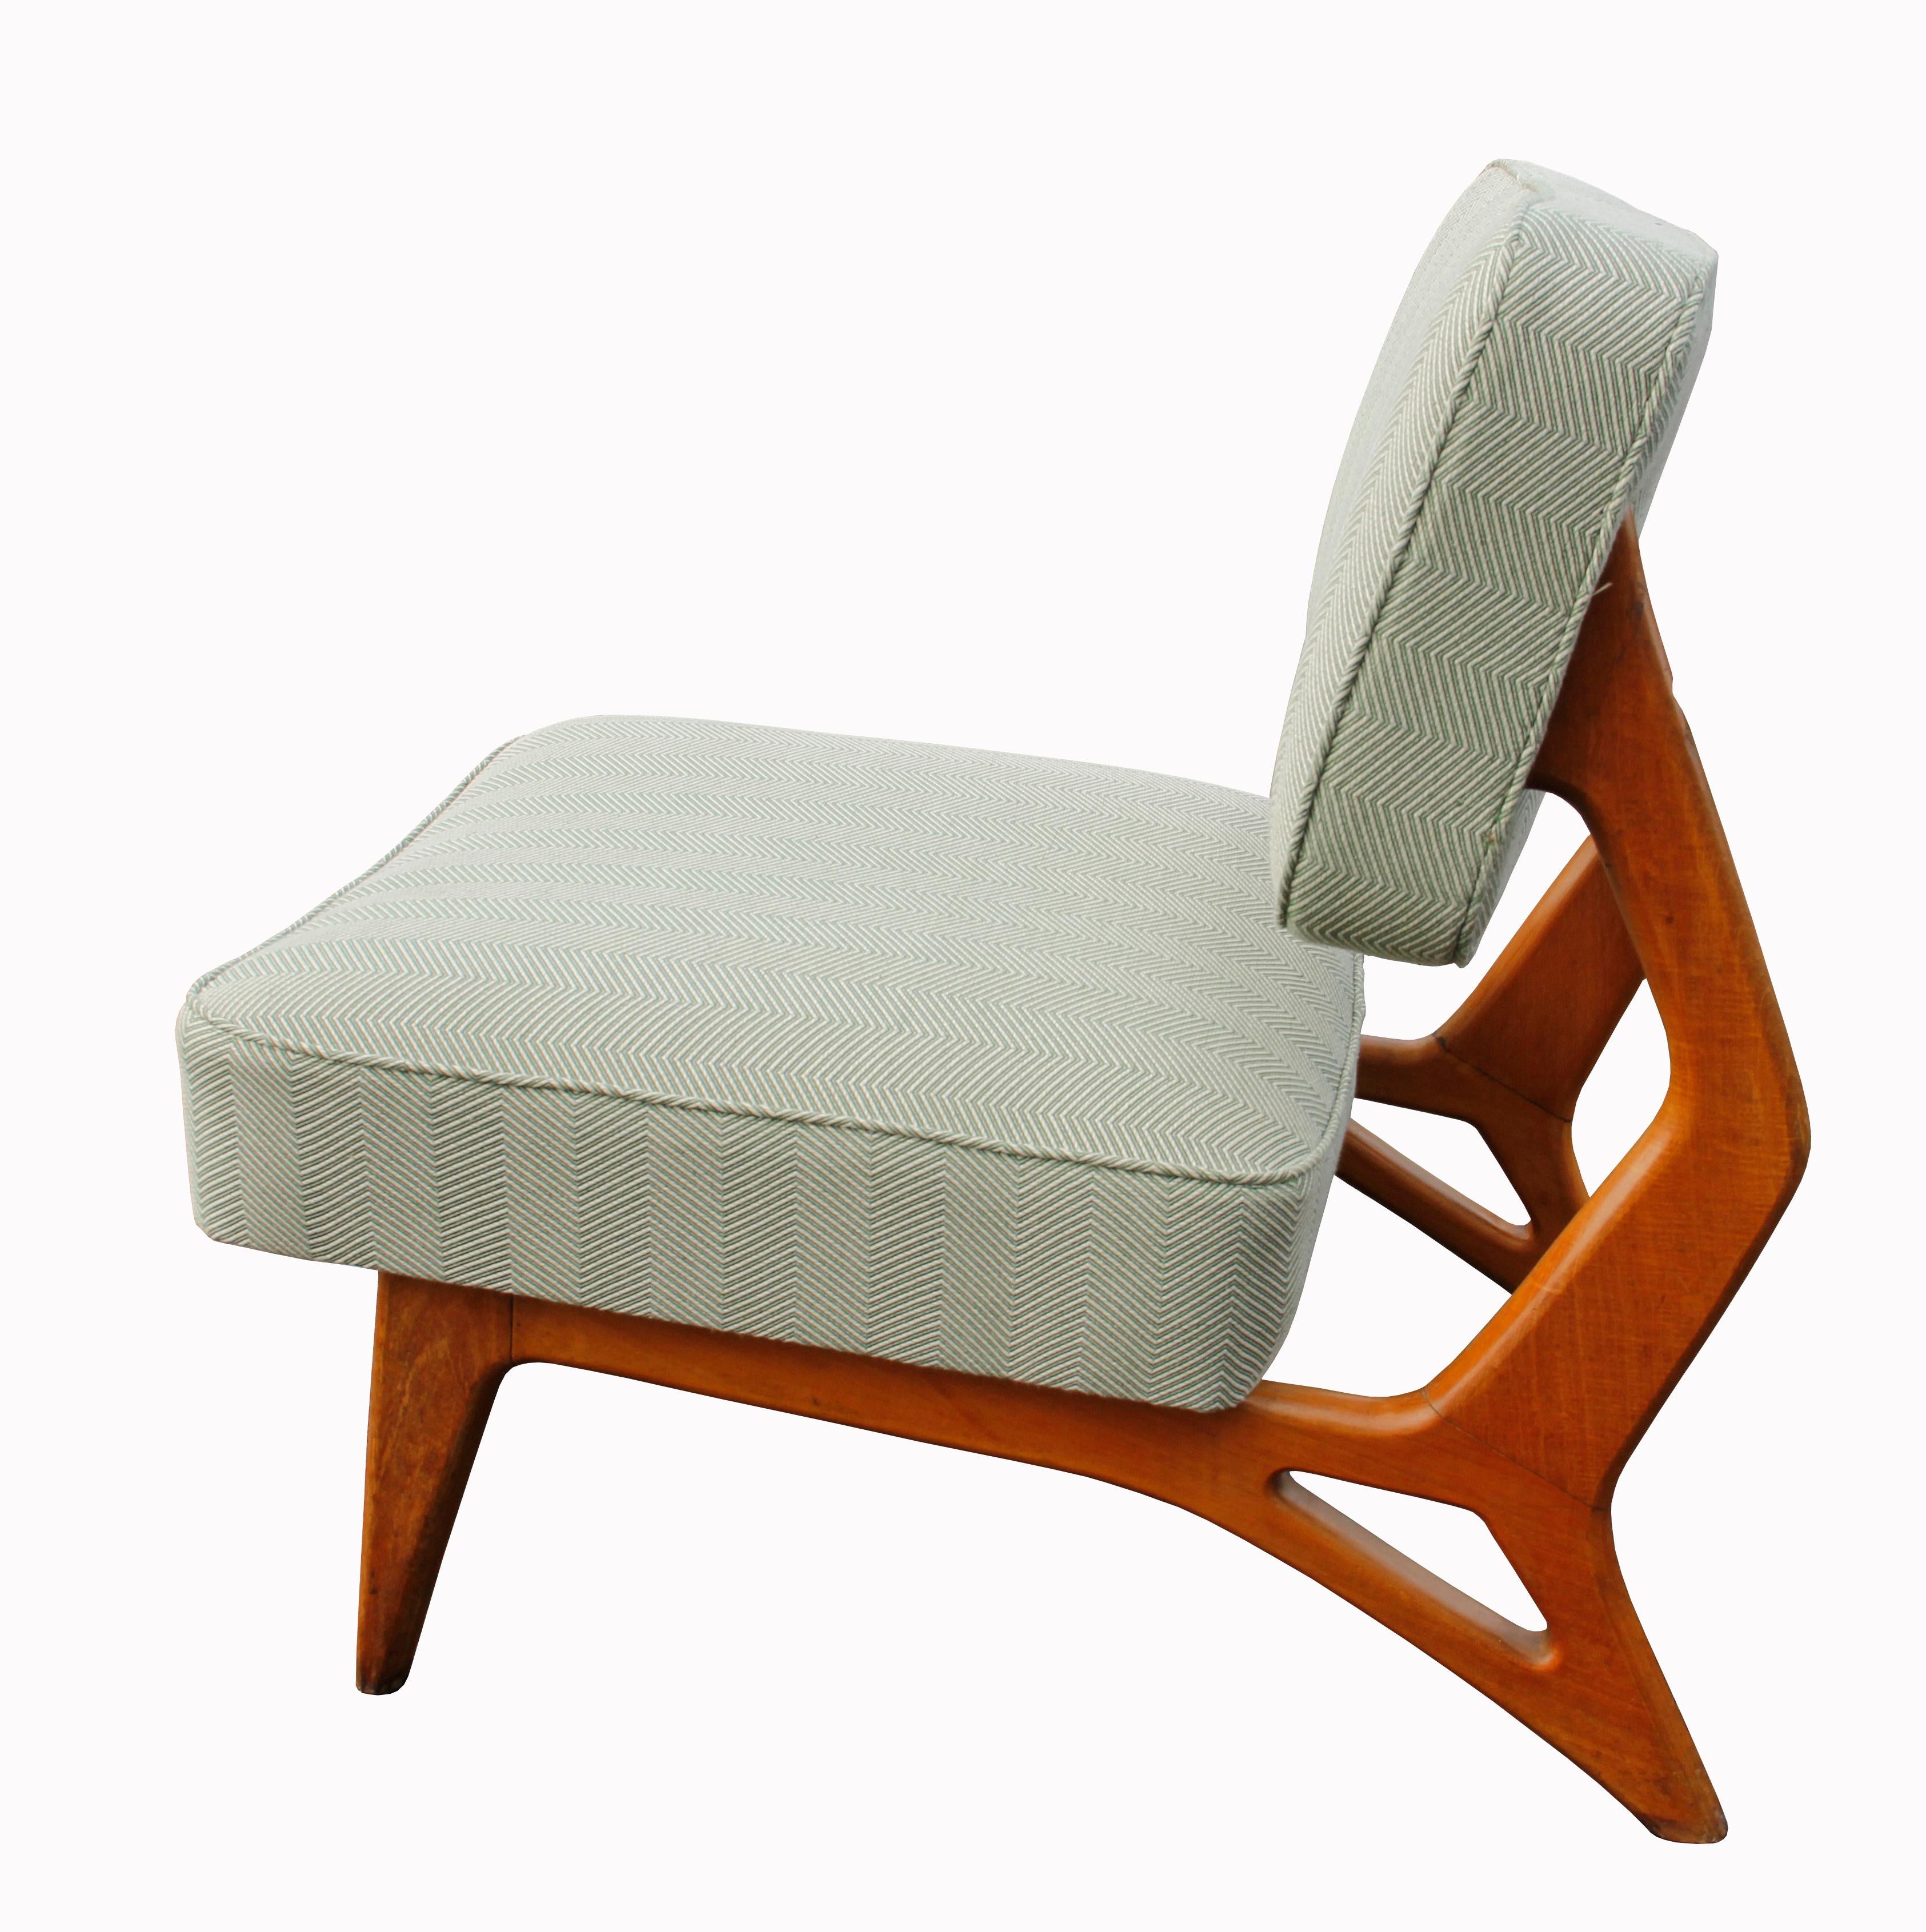 Petite chaise incurvée avec base en bois ivoire de forme organique, 'Pau Marfim'. Brésil, années 1950.
Le cadre en bois attire vraiment le regard ; le cadre de forme organique est divisé en trois parties, avec de beaux bords arrondis et des courbes.